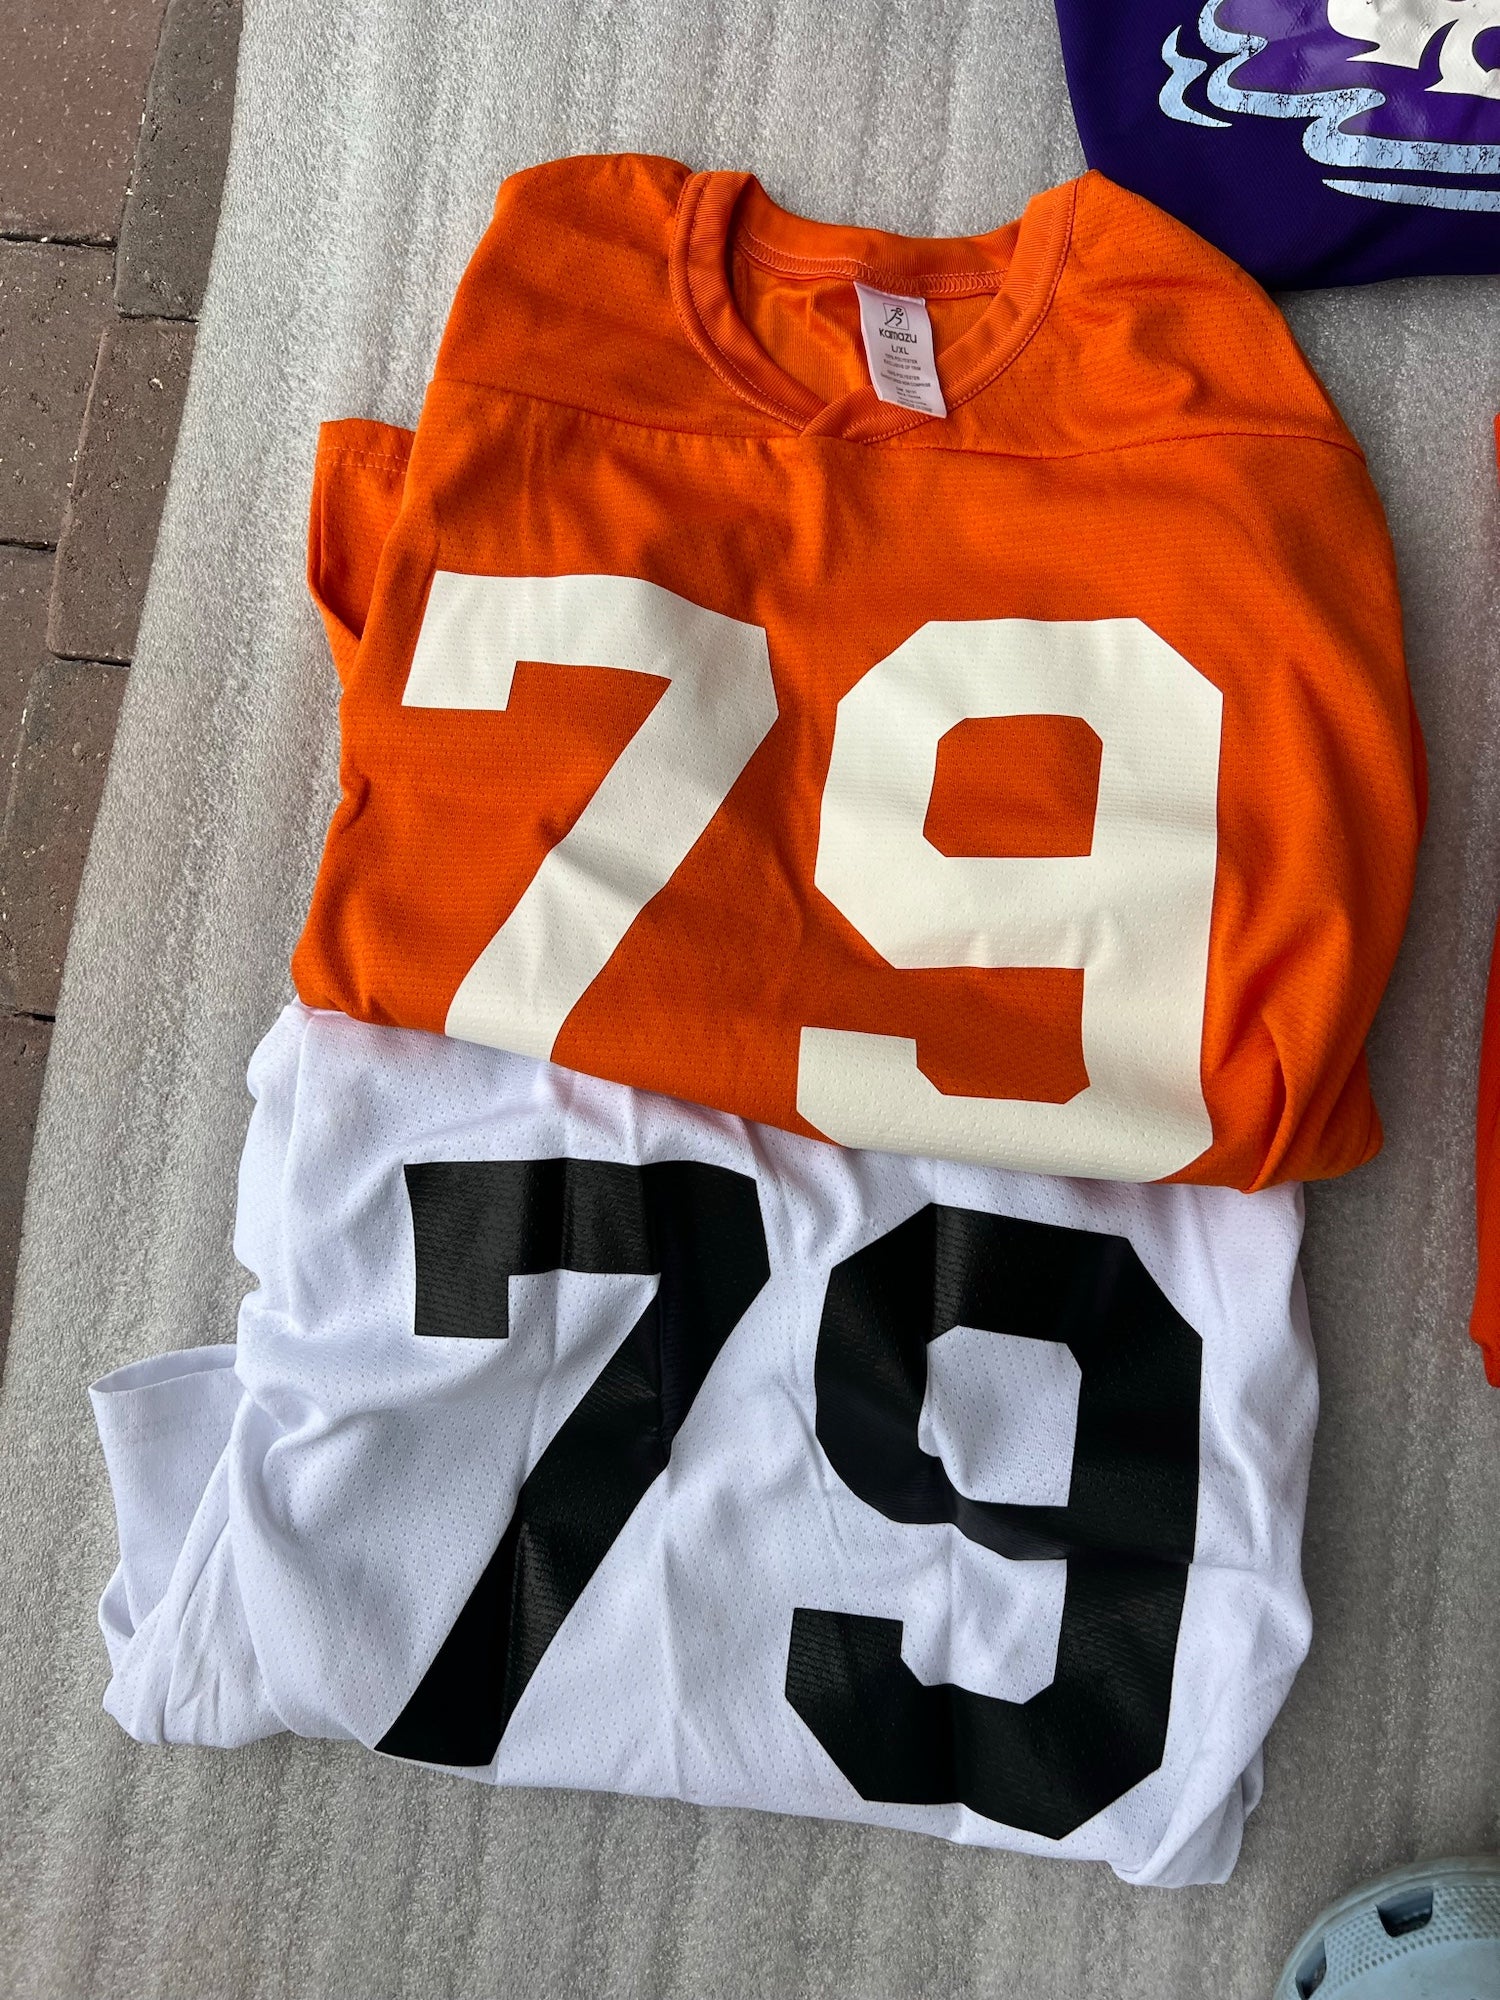 Orange fan gear jersey